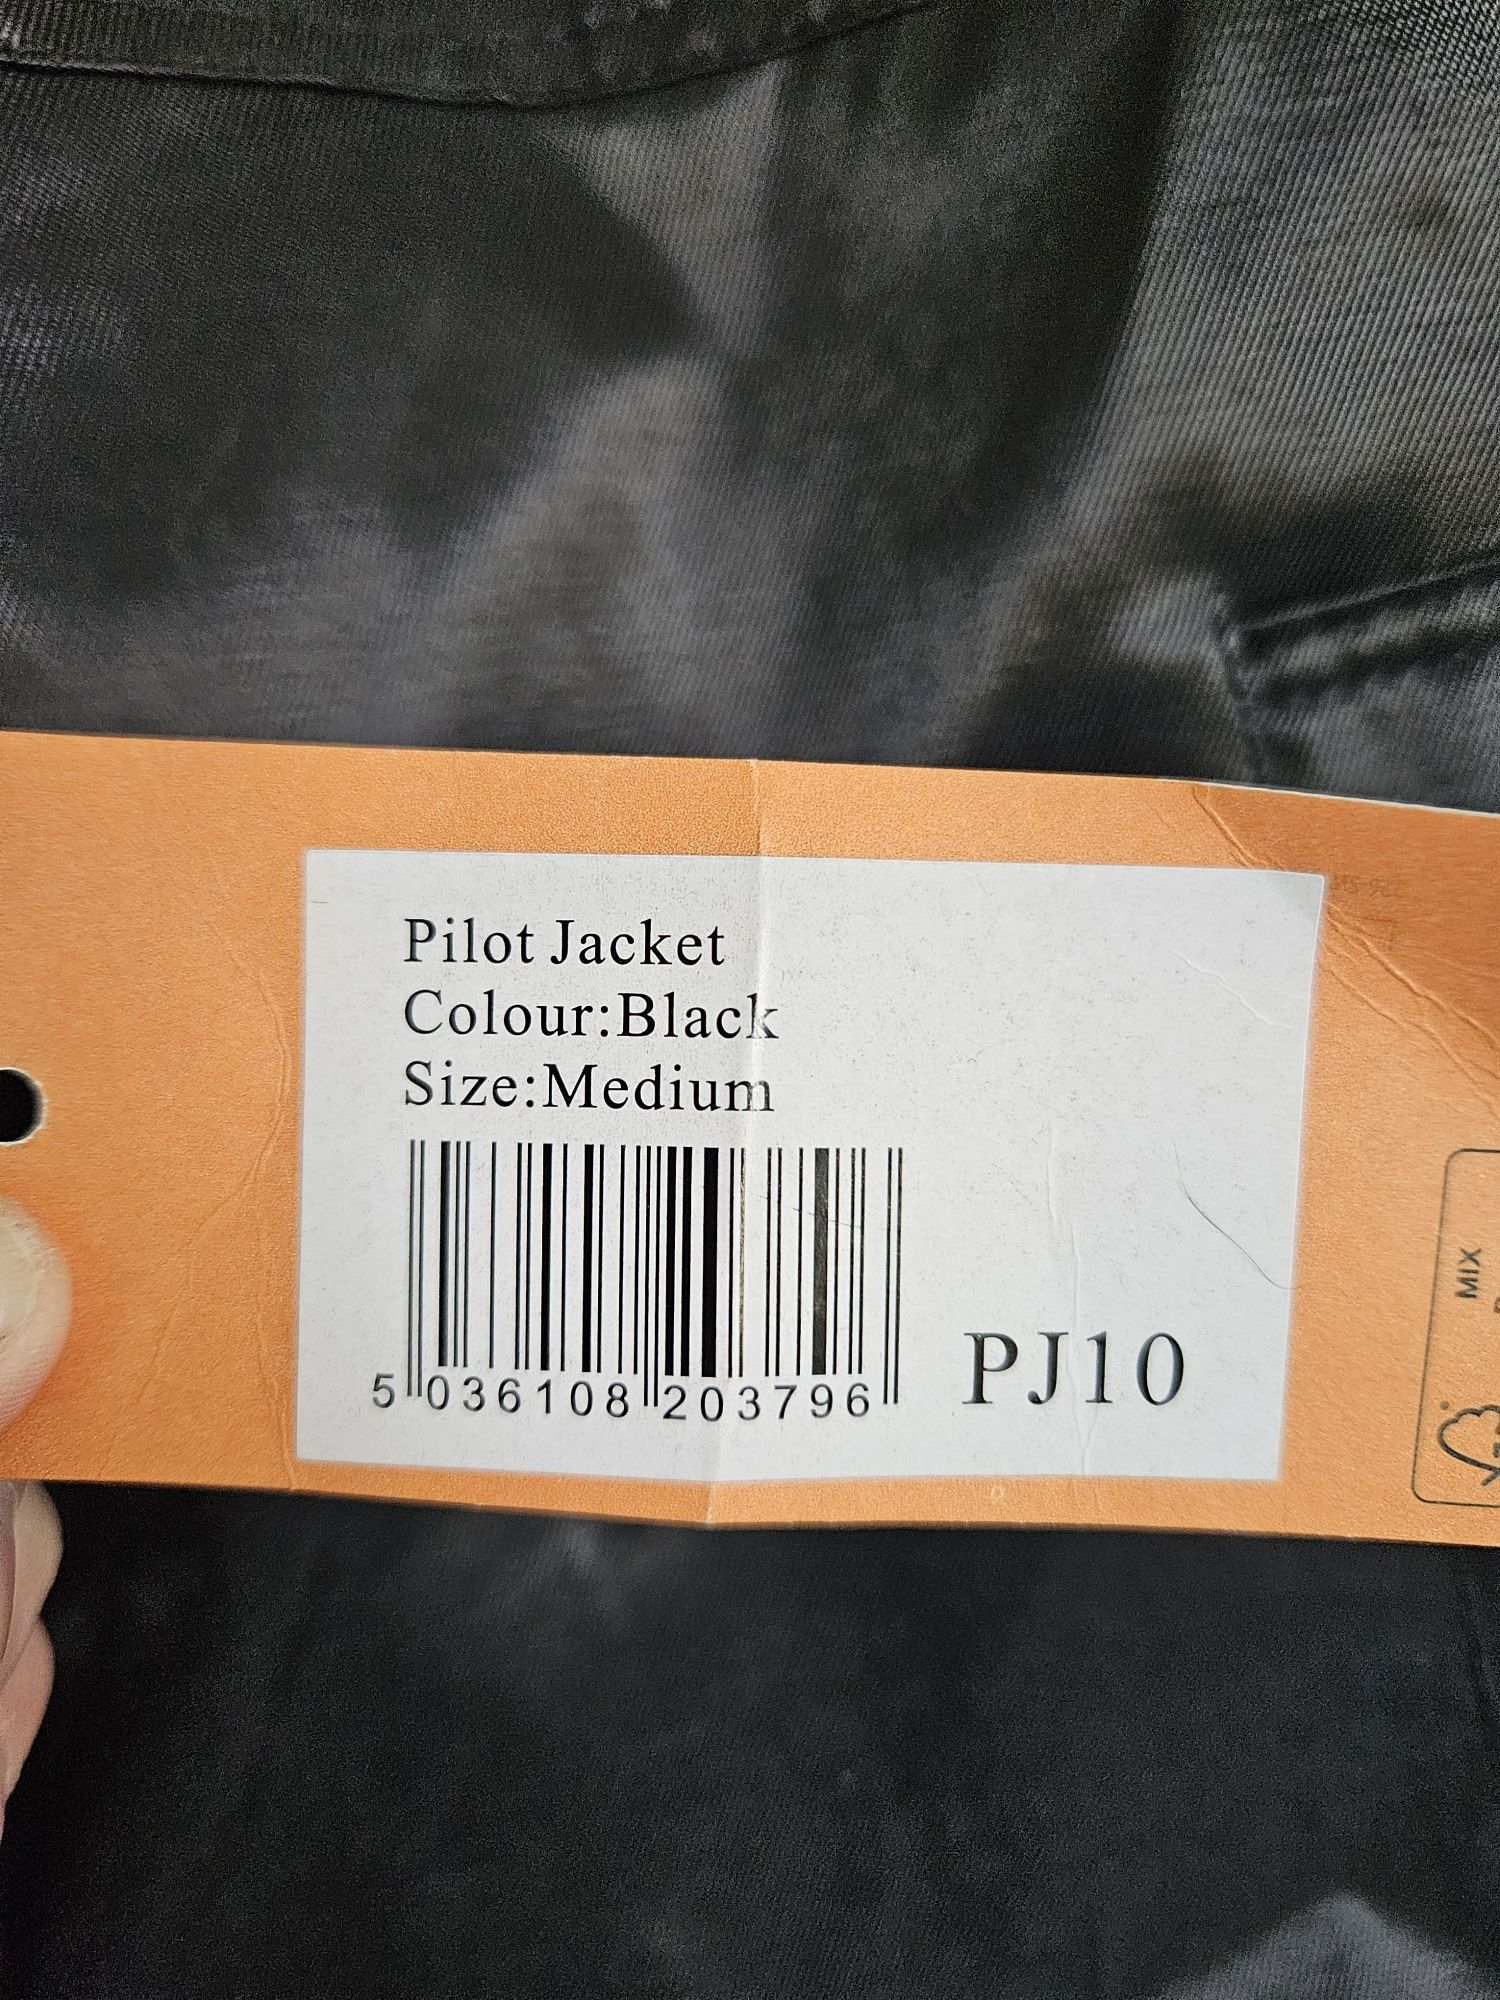 Sprzedam kurtki firmy PORTWEST typu Pilot Jacket, model PJ 10